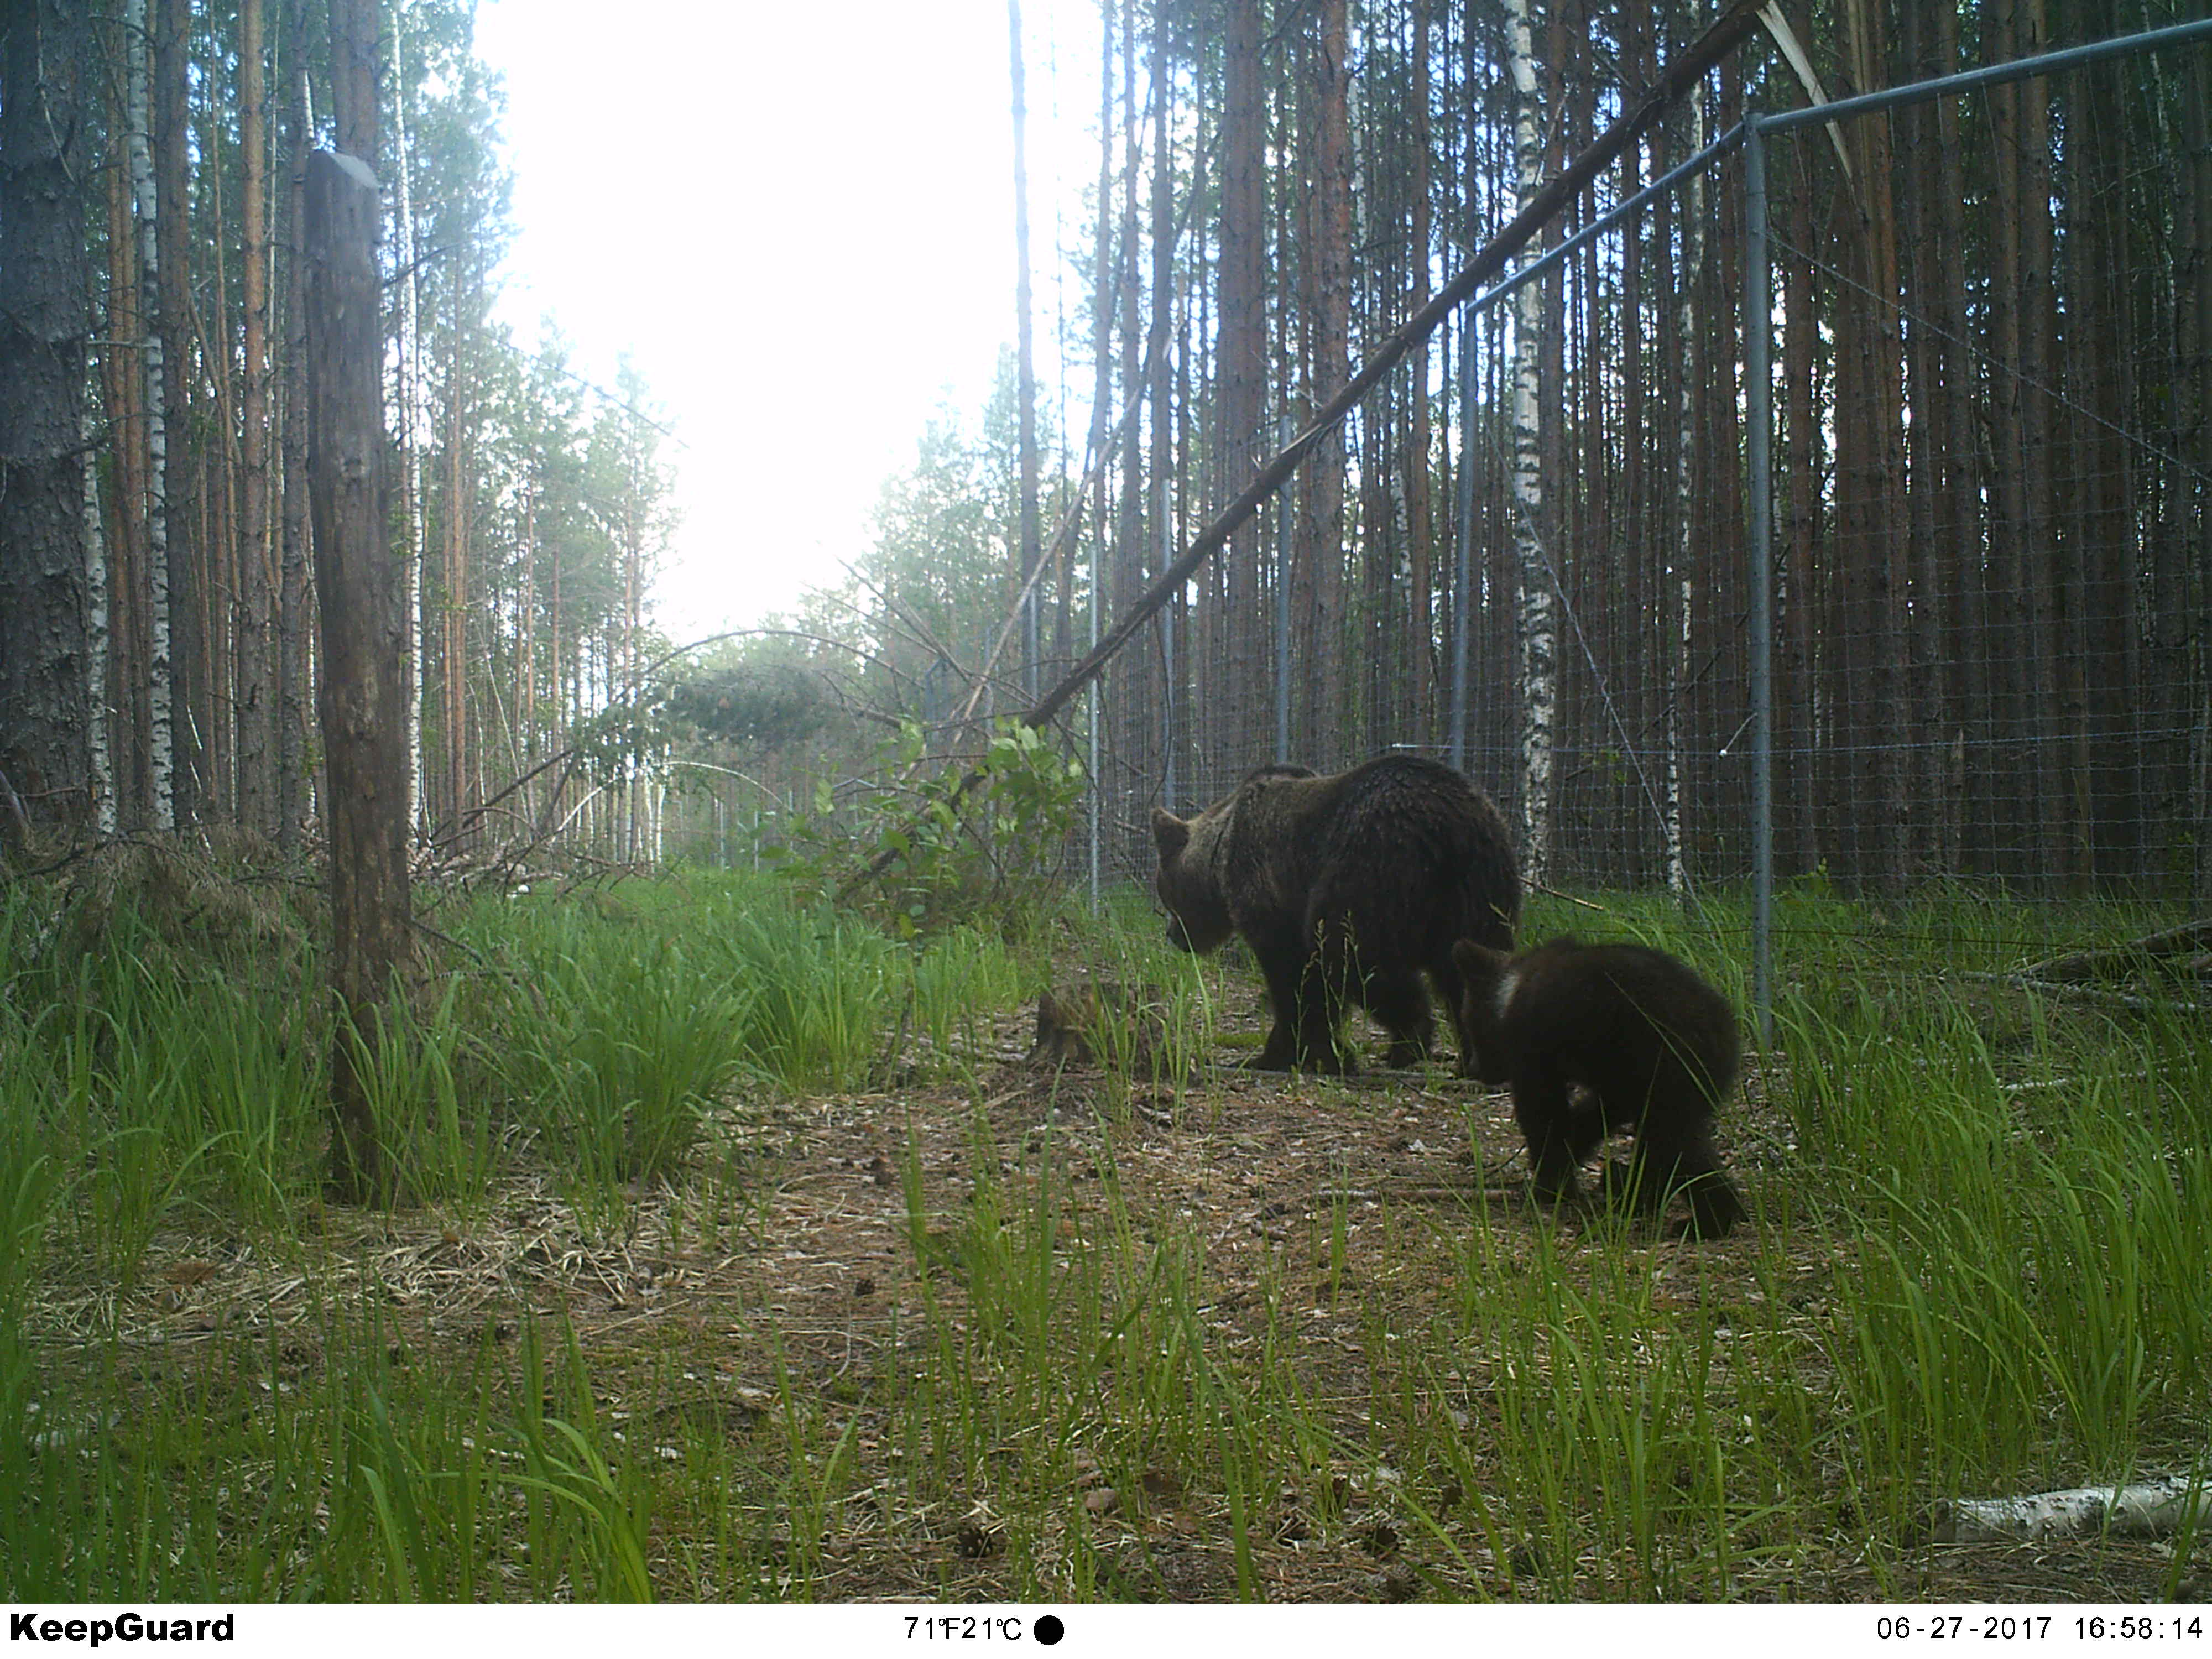 Сезон охоты на браконьеров в Керженском заповеднике открыт всегда - фото 6